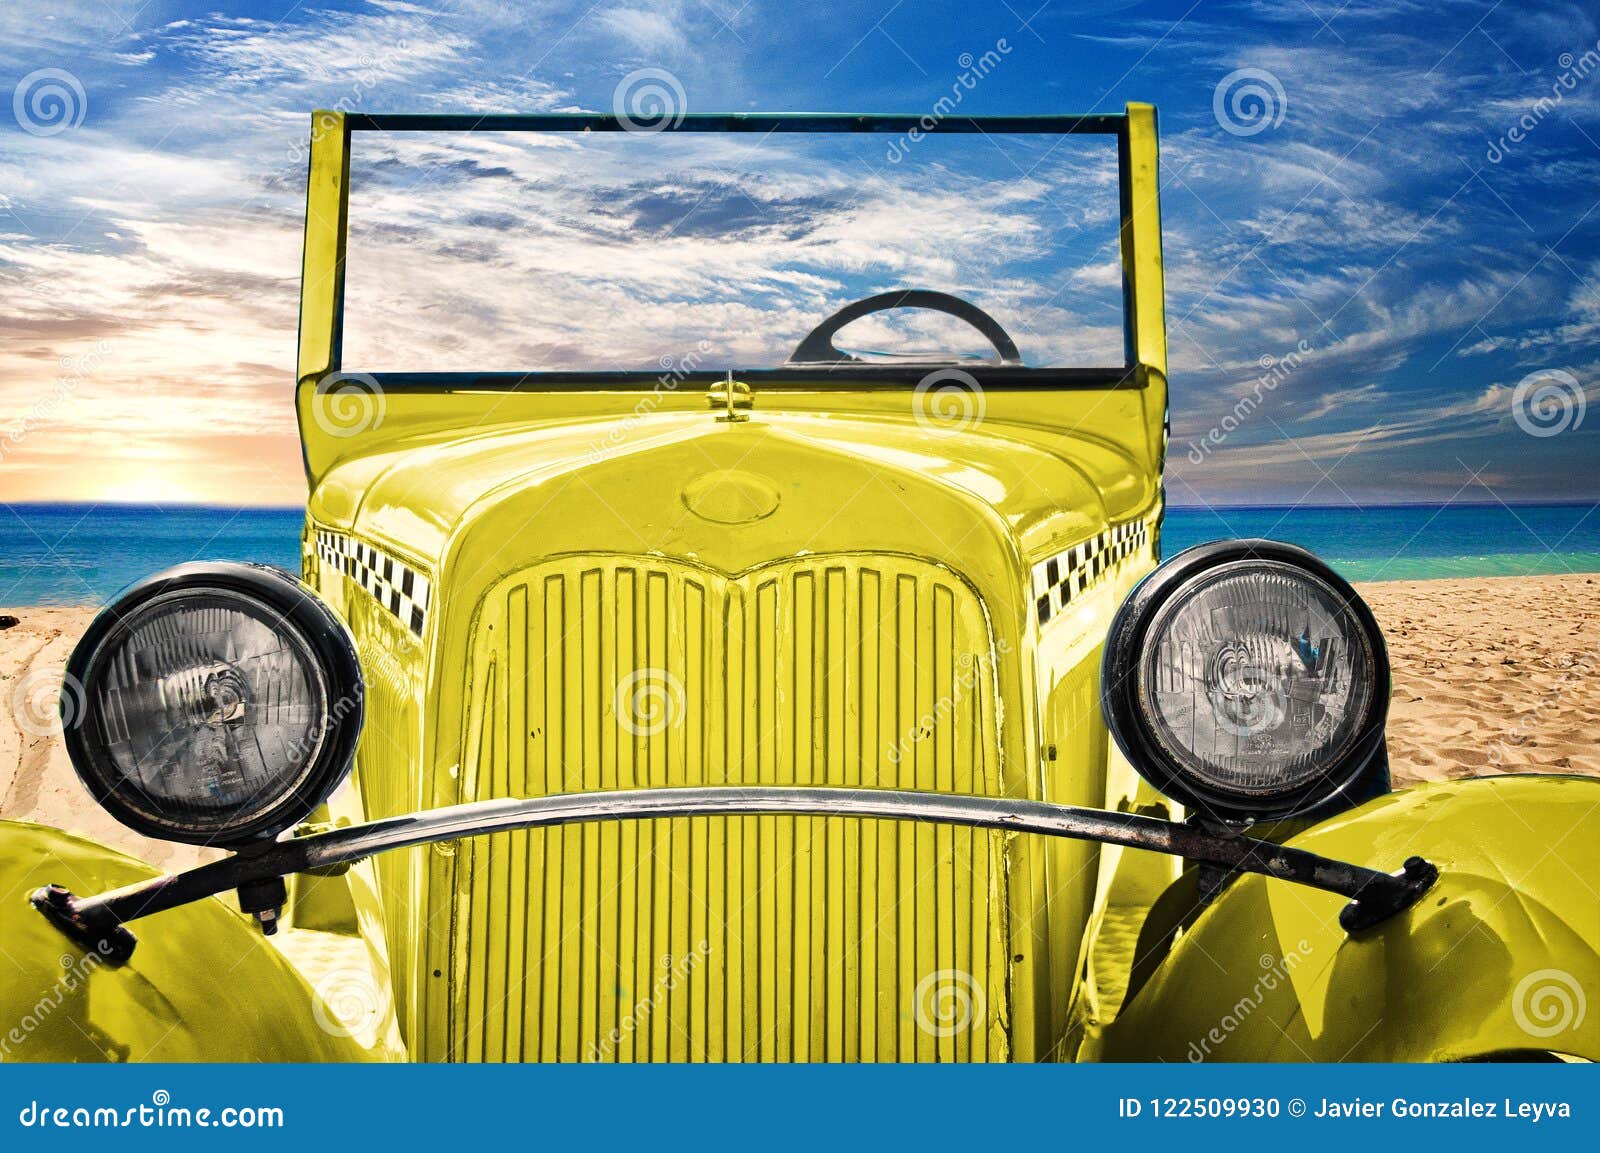 old taxy car on the beach of cuba